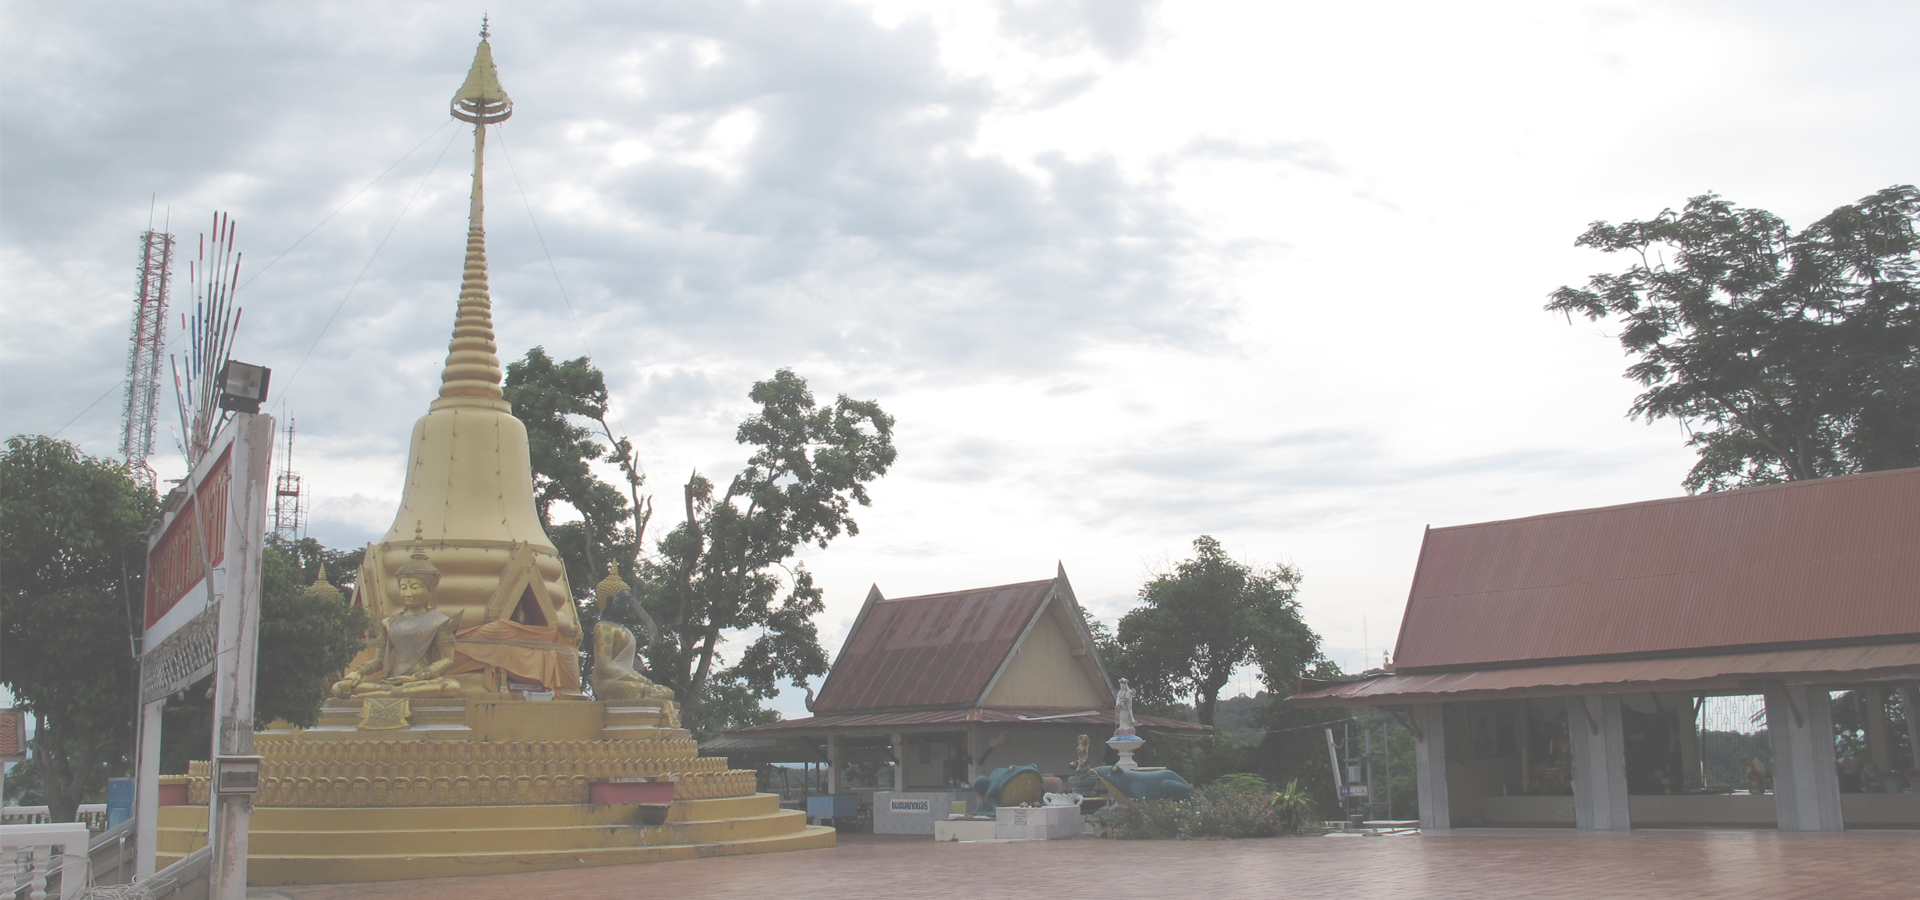 <b>Ban Phot, Phetchabun Province, Thailand</b>